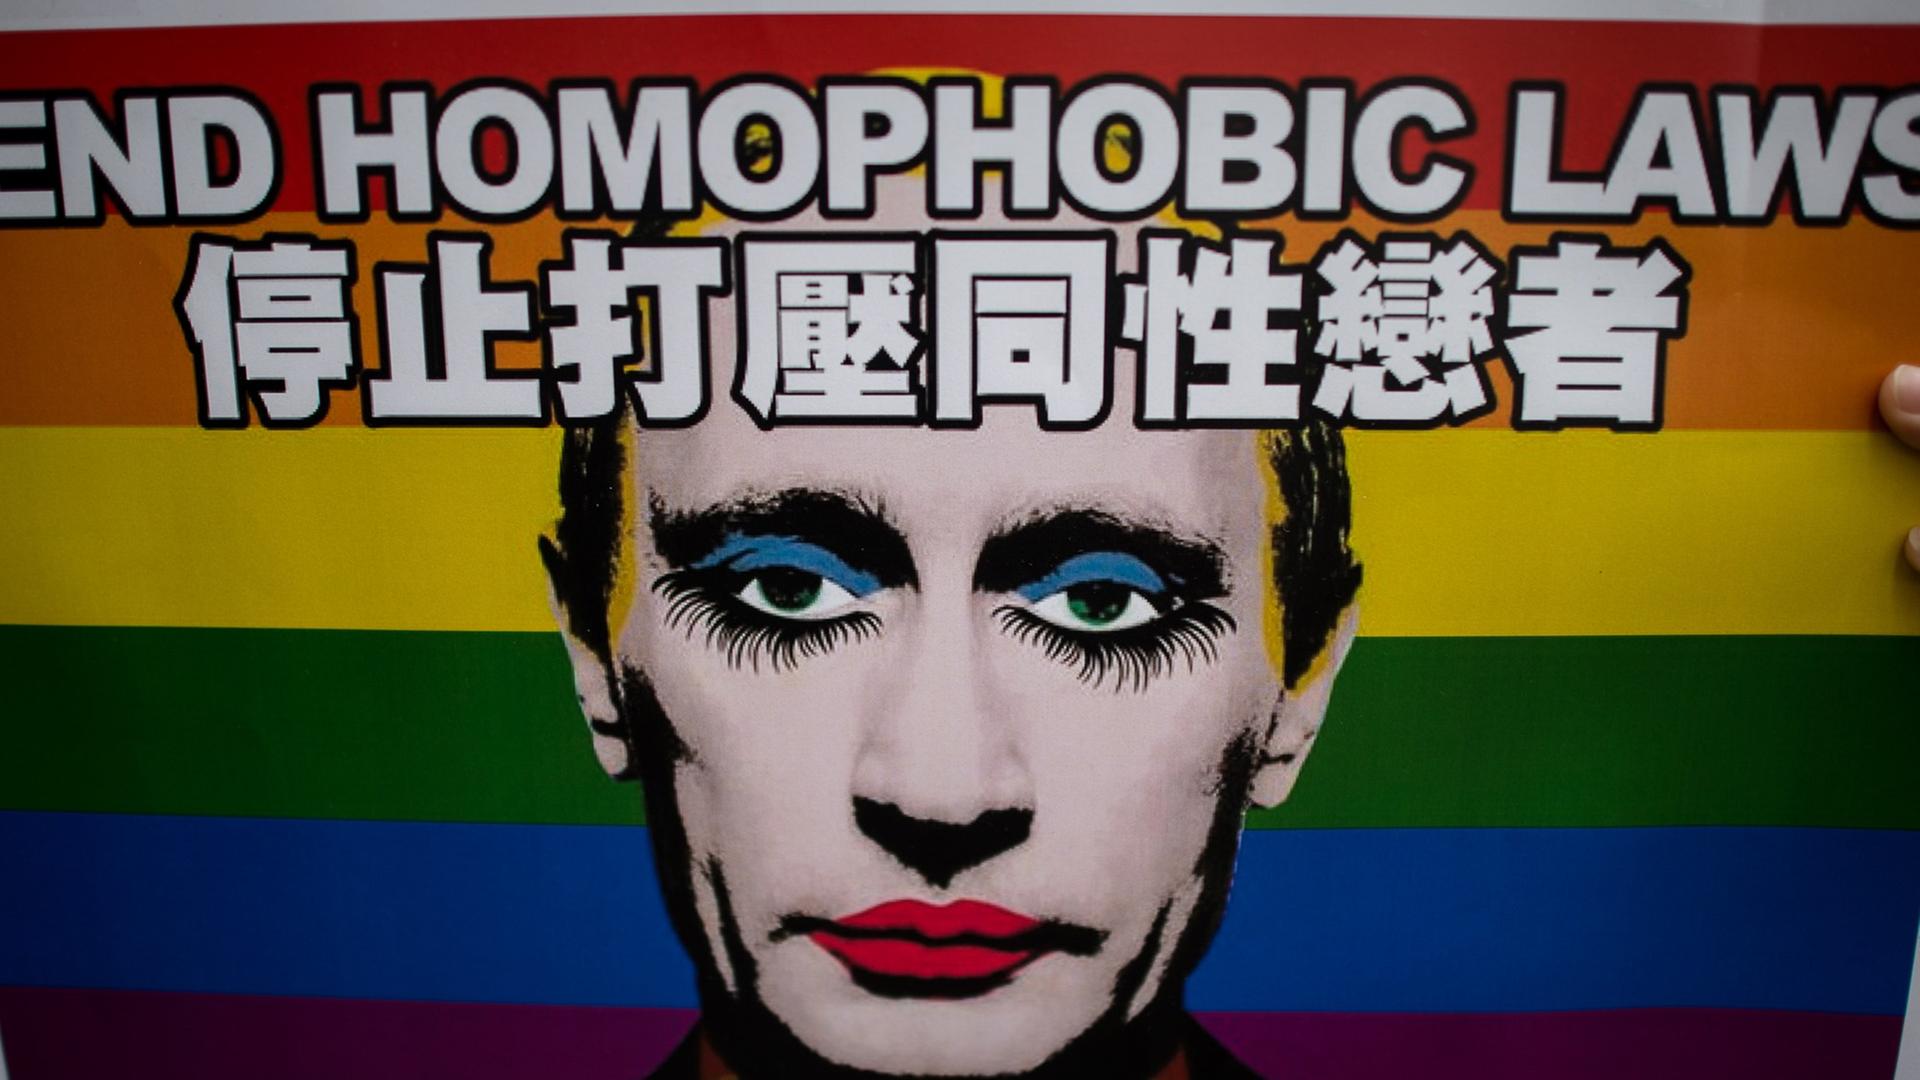 Ein Plakat mit der Aufschrift "End homophobic laws" zeigt einen wie eine Dragqueen geschminkten Wladimir Putin, im Hintergrund die Regenbogenflagge als Symbol der homosexuellen Bewegung.